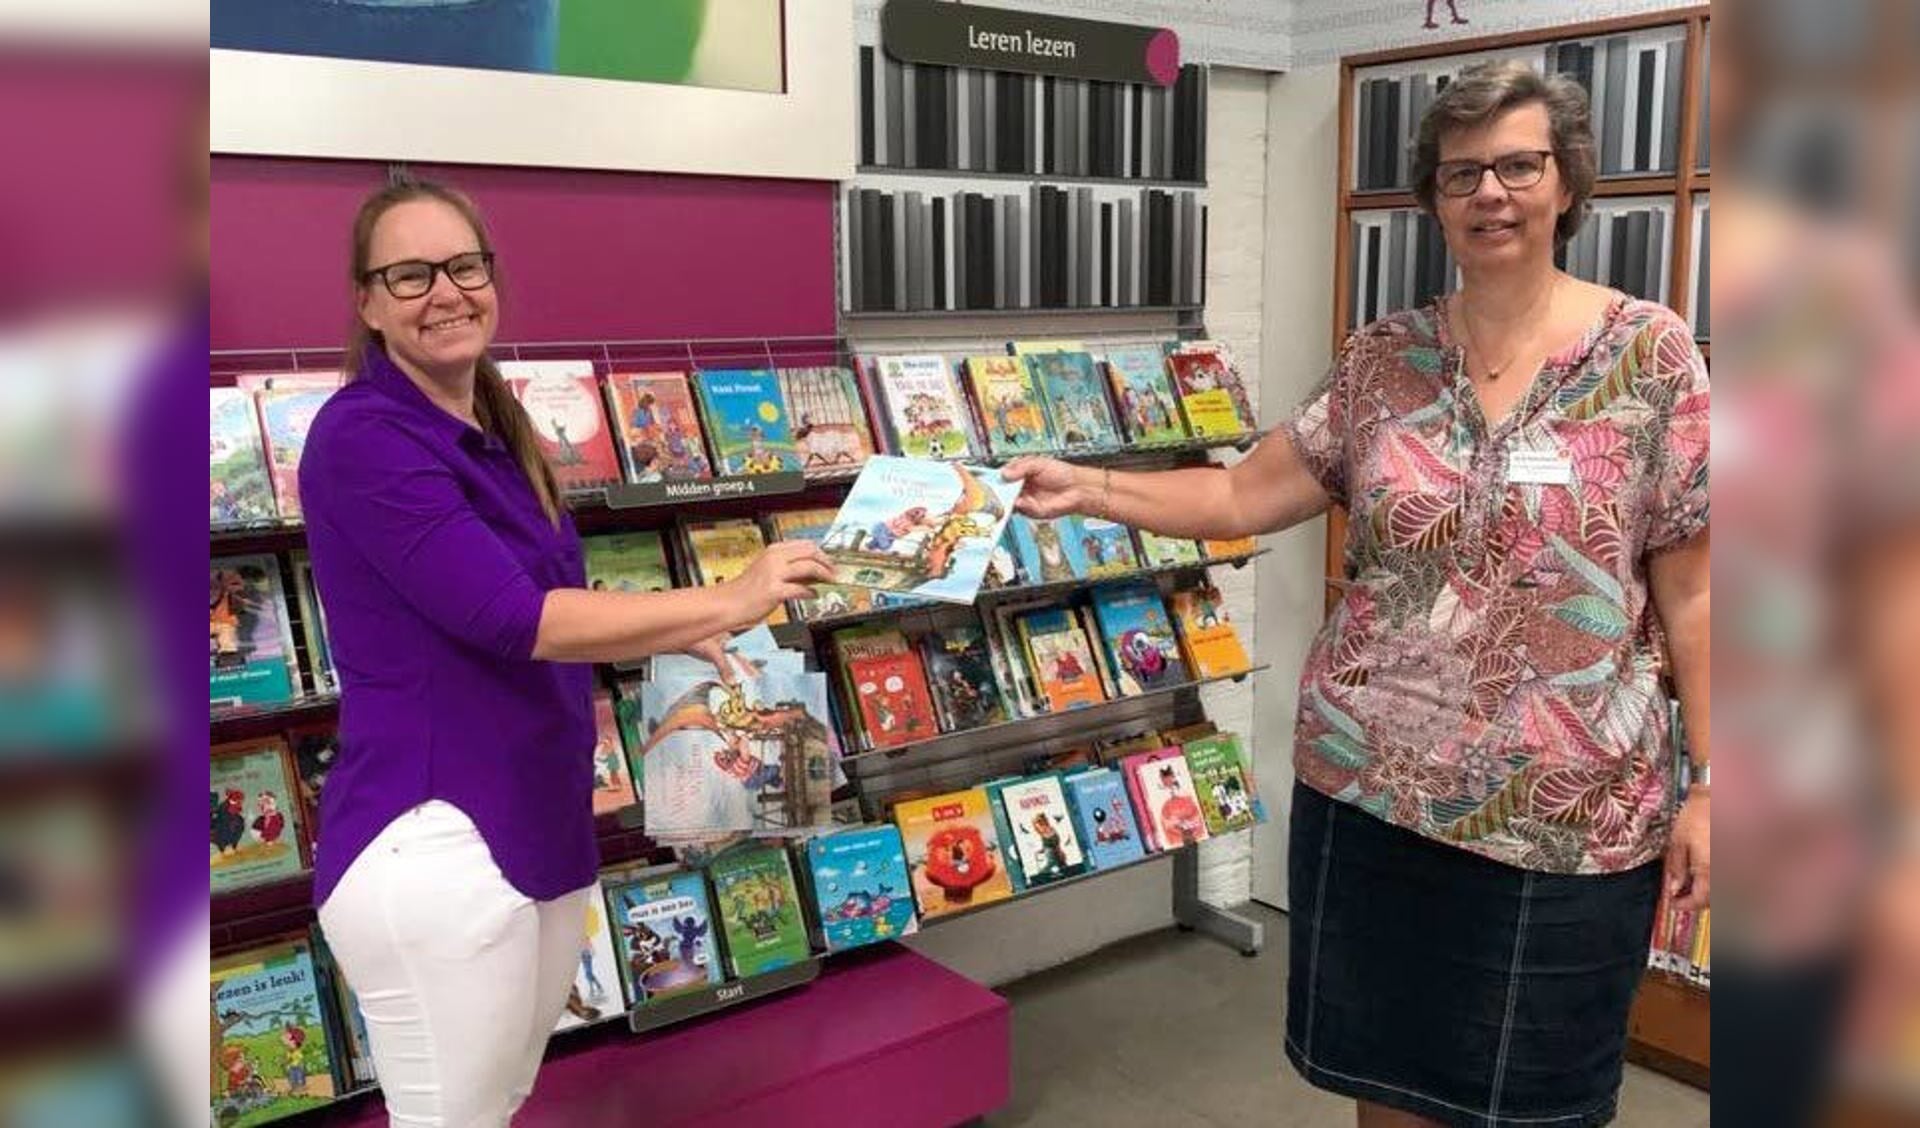 PvdA schenkt dertig prentenboeken aan 'taalarme gezinnen'